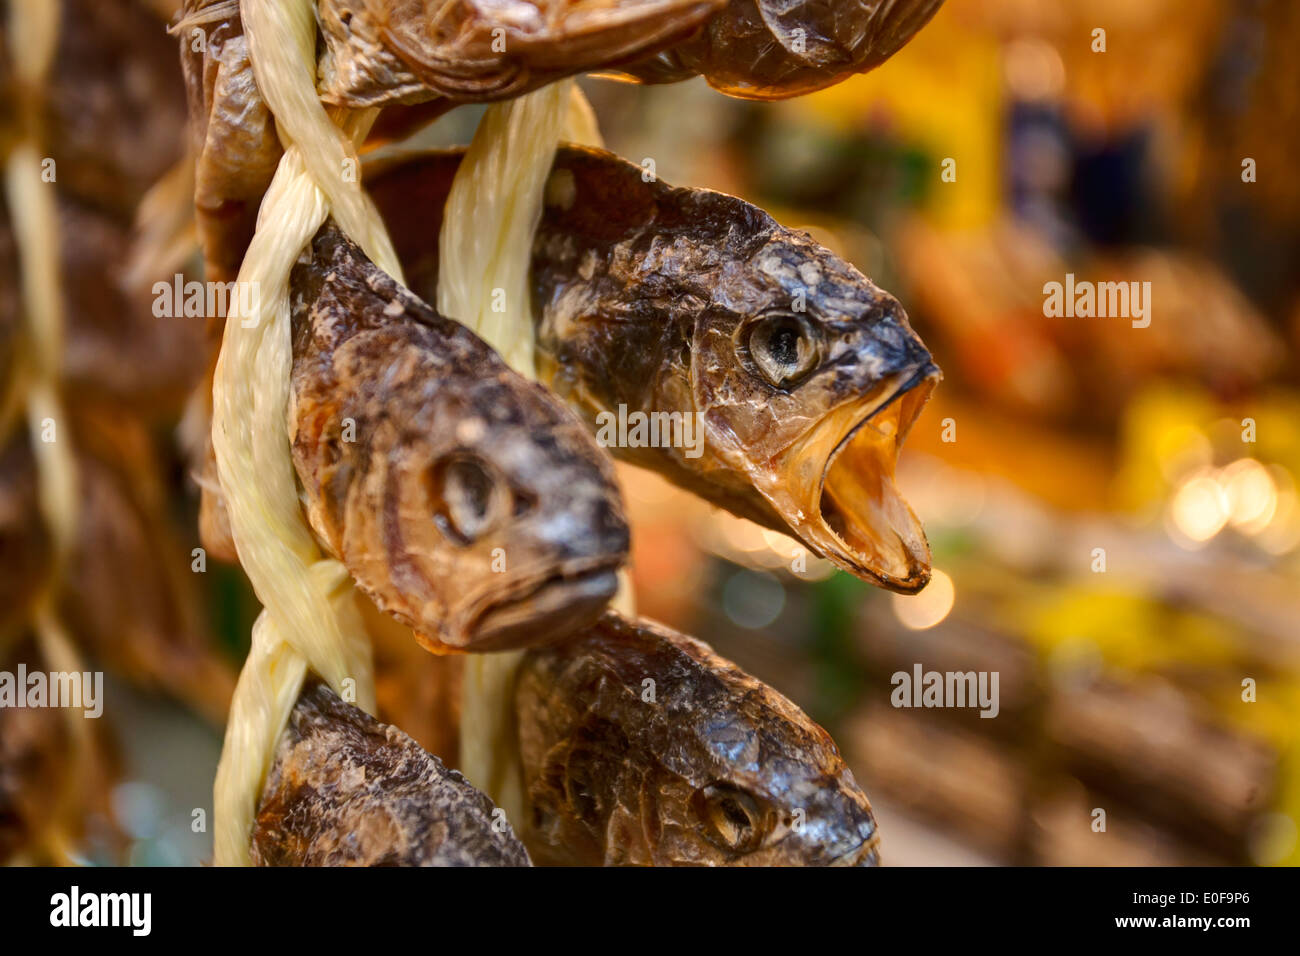 Pesce secco appesi per le vendite nel mercato. Foto Stock